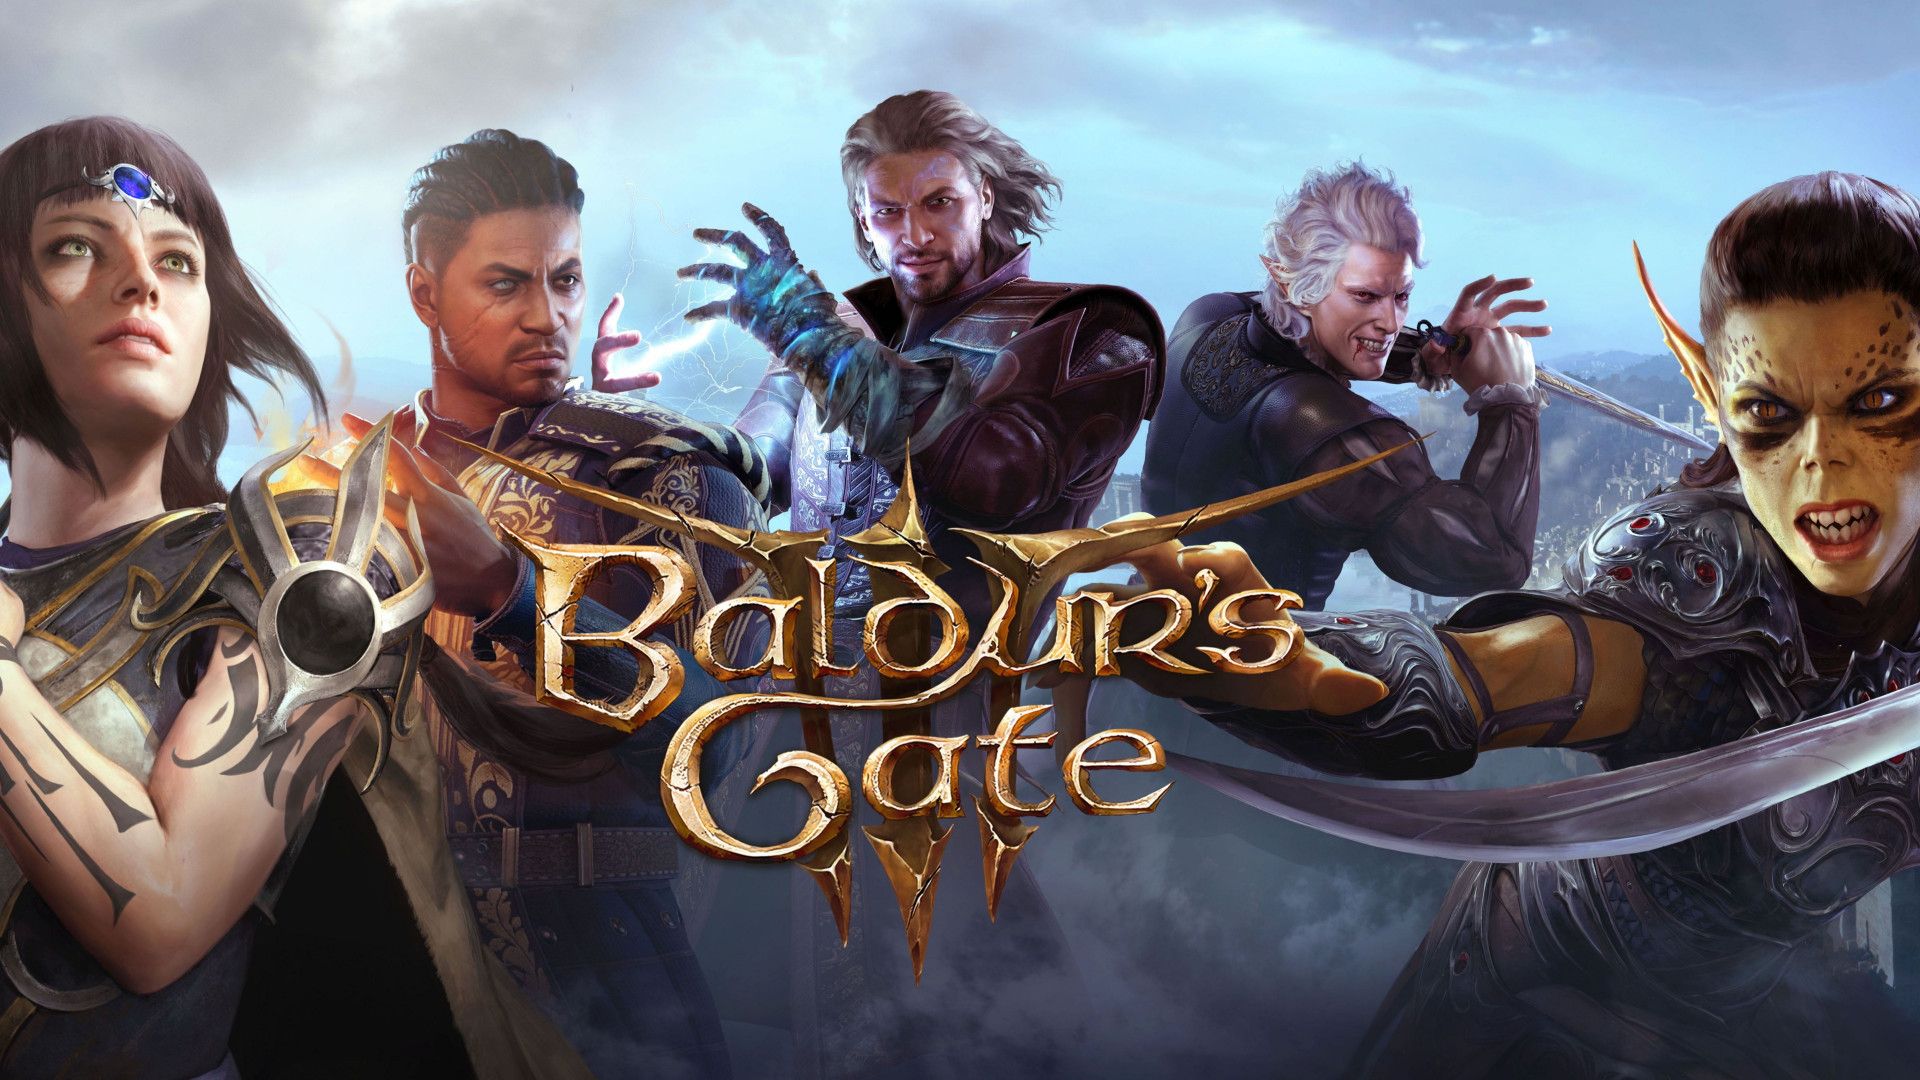 Создание модов в Baldur's Gate 3 станет доступно с 7 номерным патчем